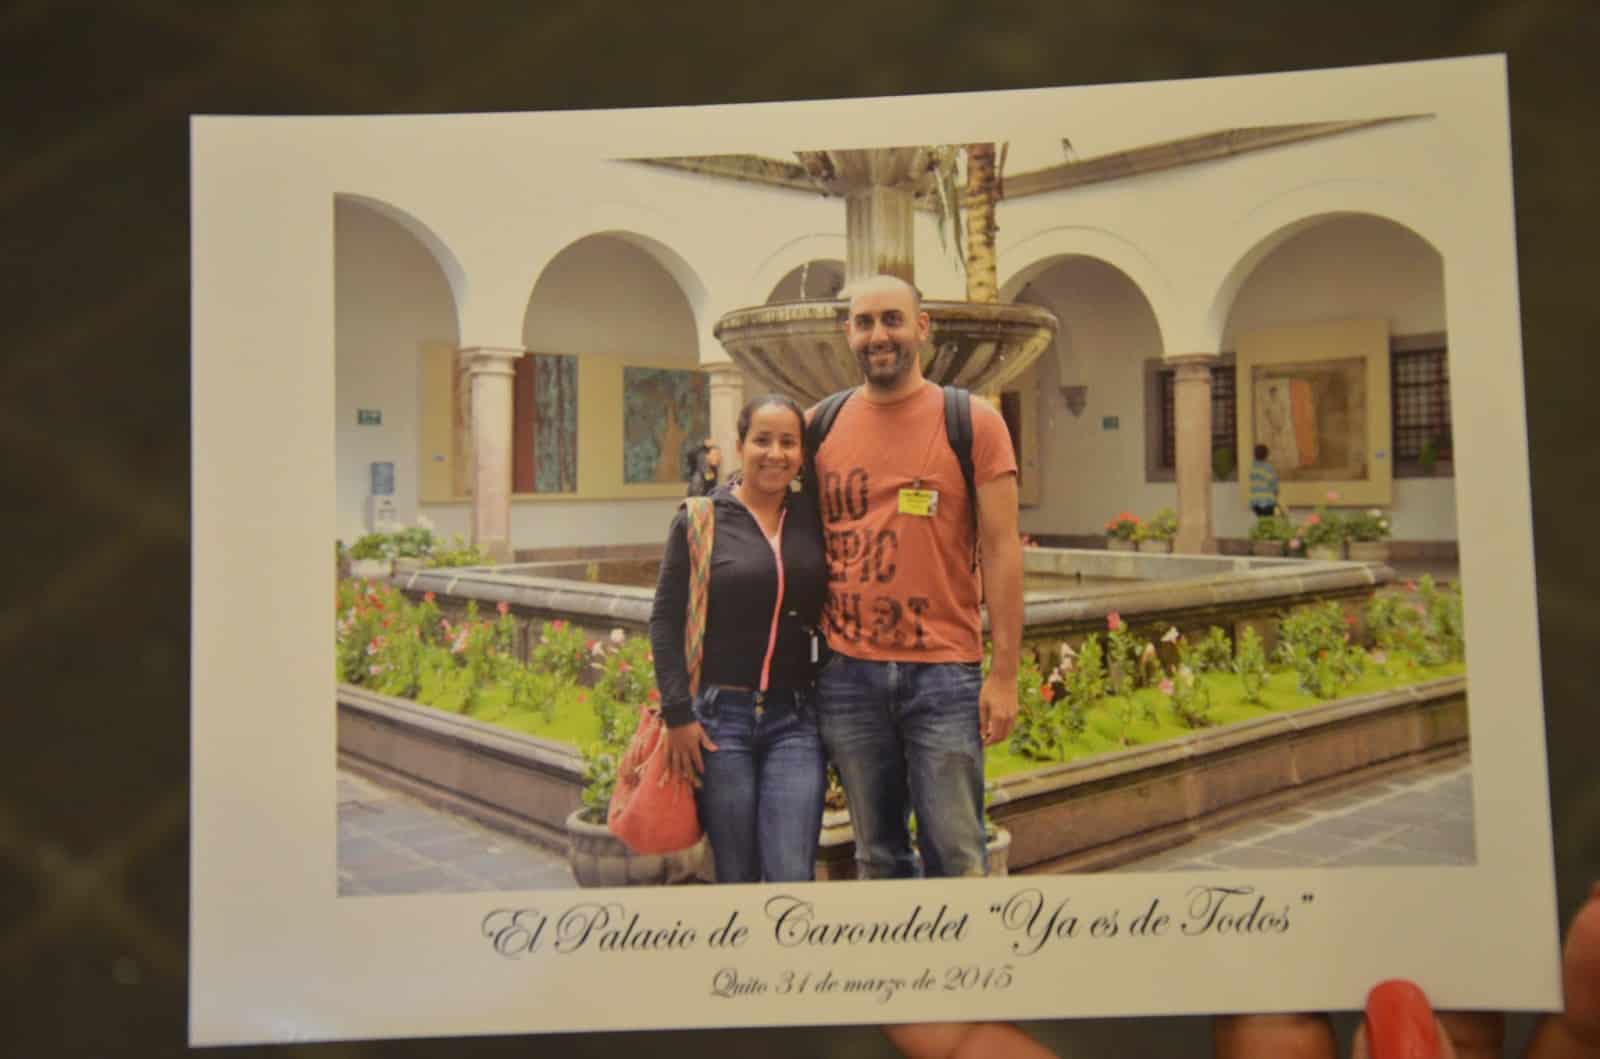 Souvenir photo at Palacio de Carondelet on Plaza Grande in Quito, Ecuador